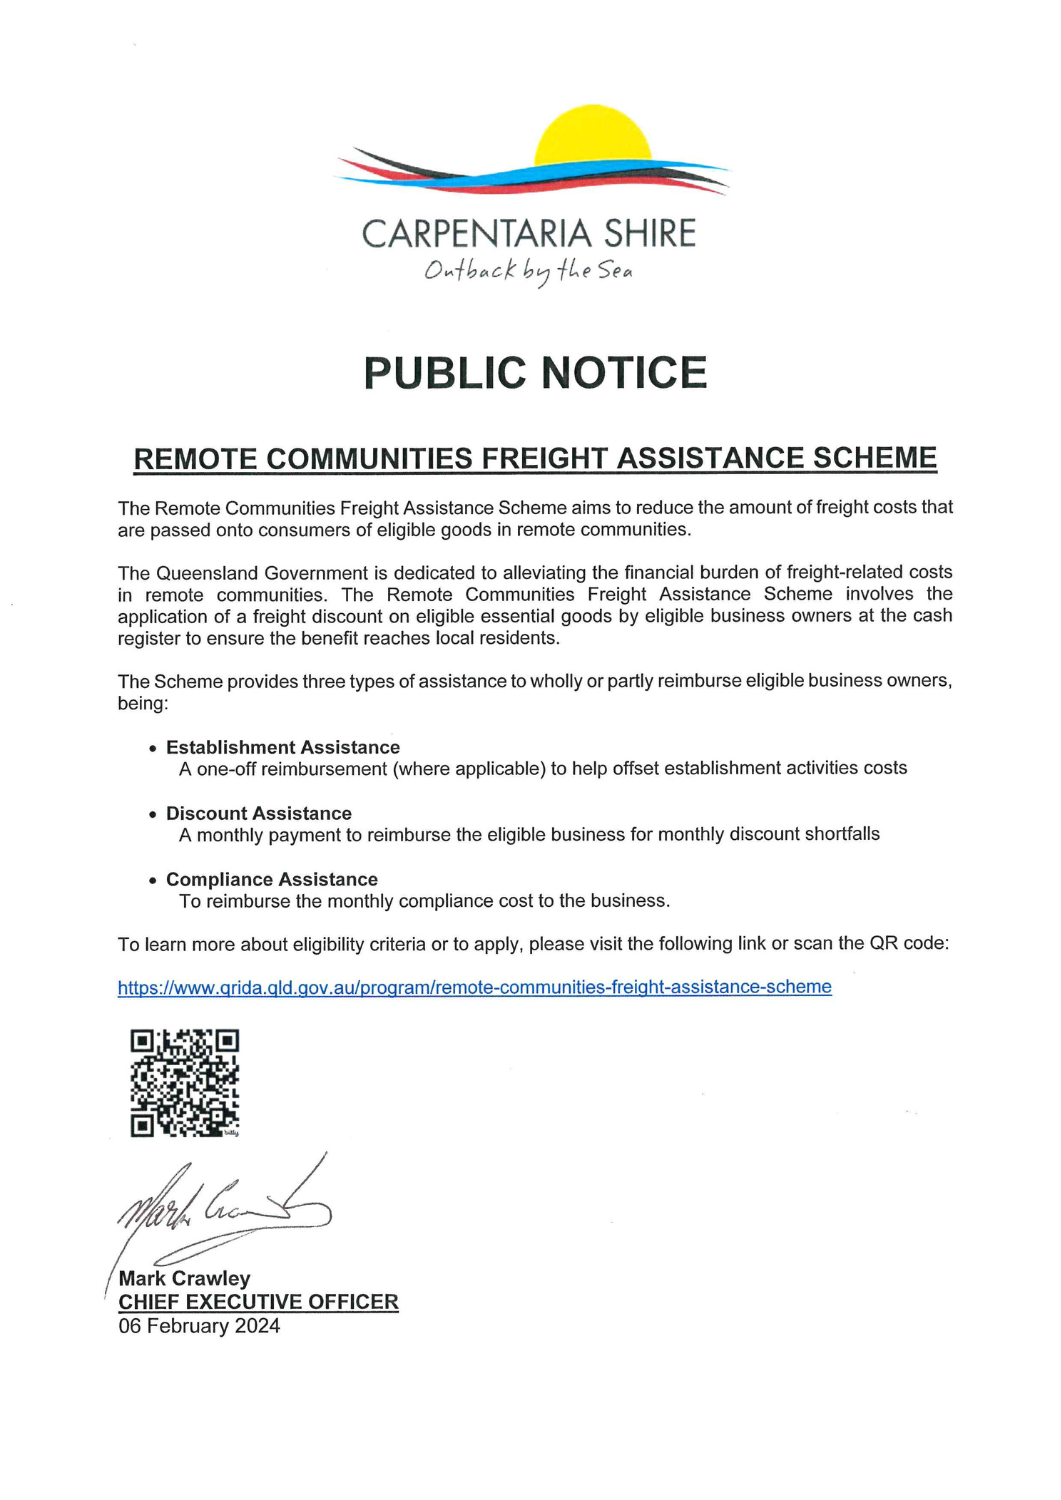 Public notice - The Remote Communities Freight Assistance Scheme